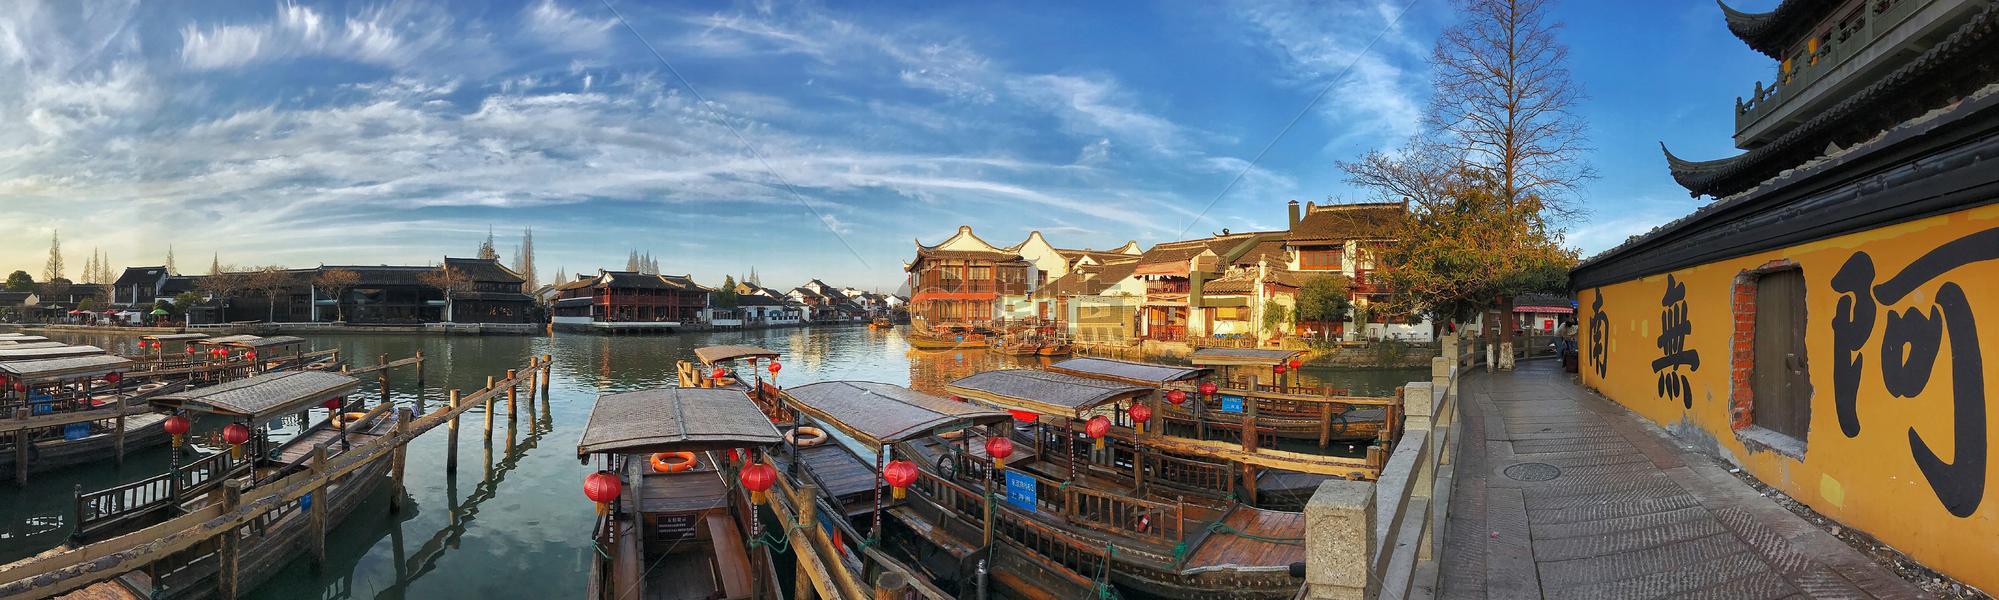 上海的江南古镇朱家角风光图片素材免费下载